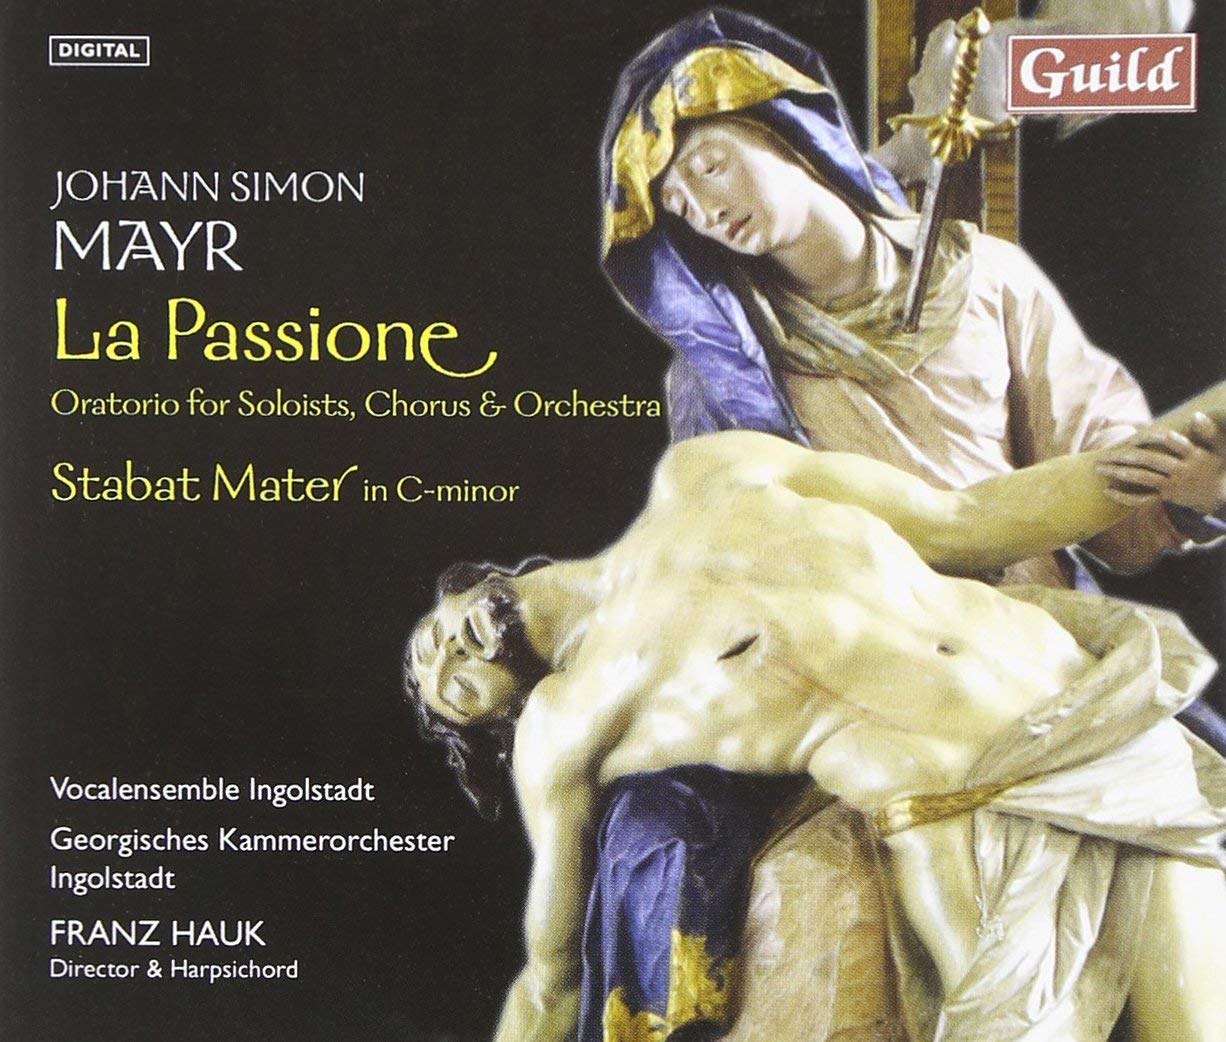 Audio Cd Johann Simon Mayr - La Passione - Vocal Ensemble Ingolstadt NUOVO SIGILLATO, EDIZIONE DEL 11/06/2002 SUBITO DISPONIBILE